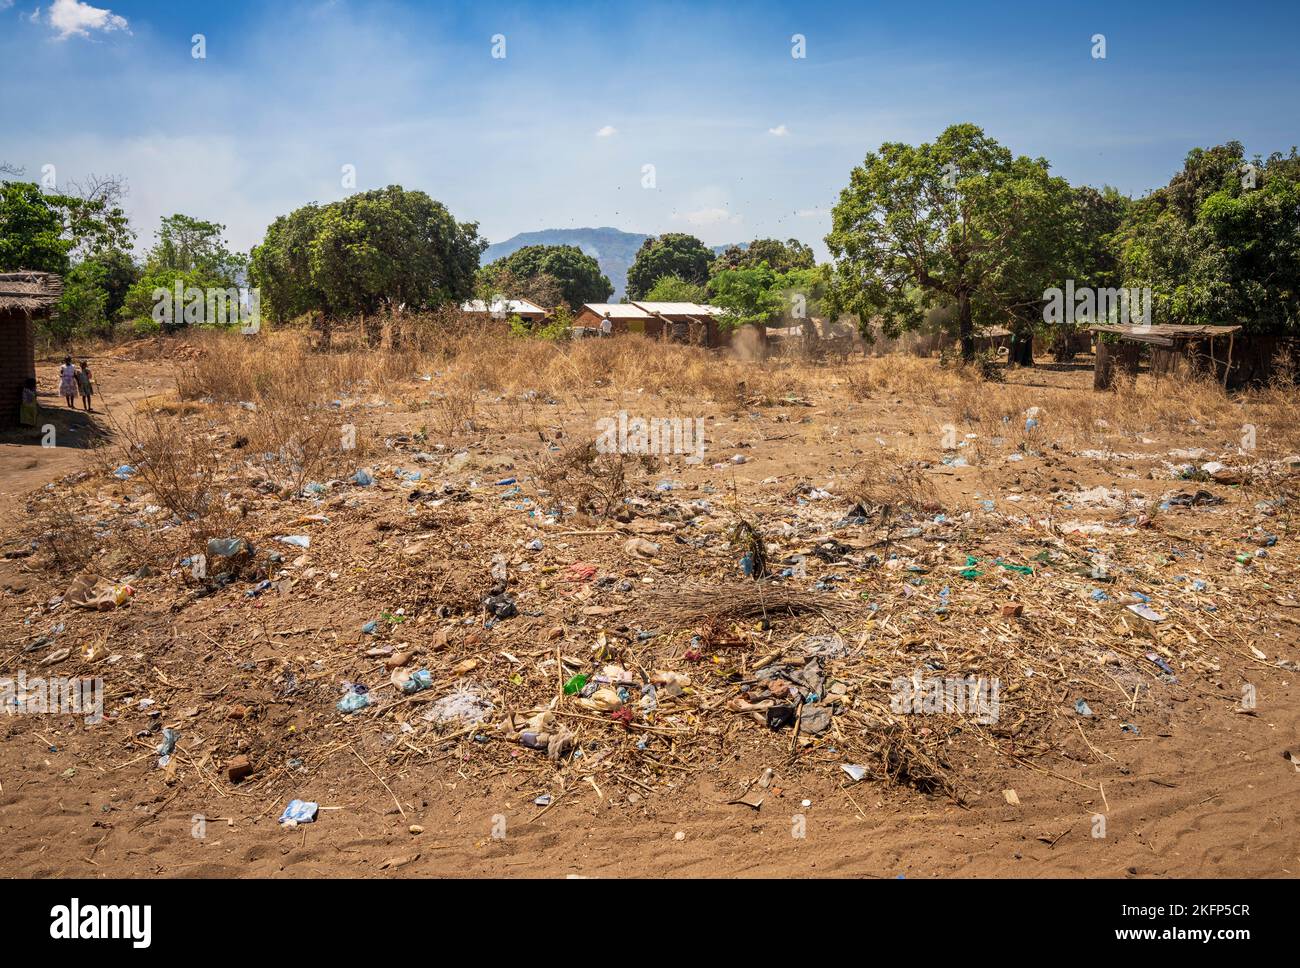 Déchets de plastique / litière au bord de la route dans un village rural du Malawi Banque D'Images